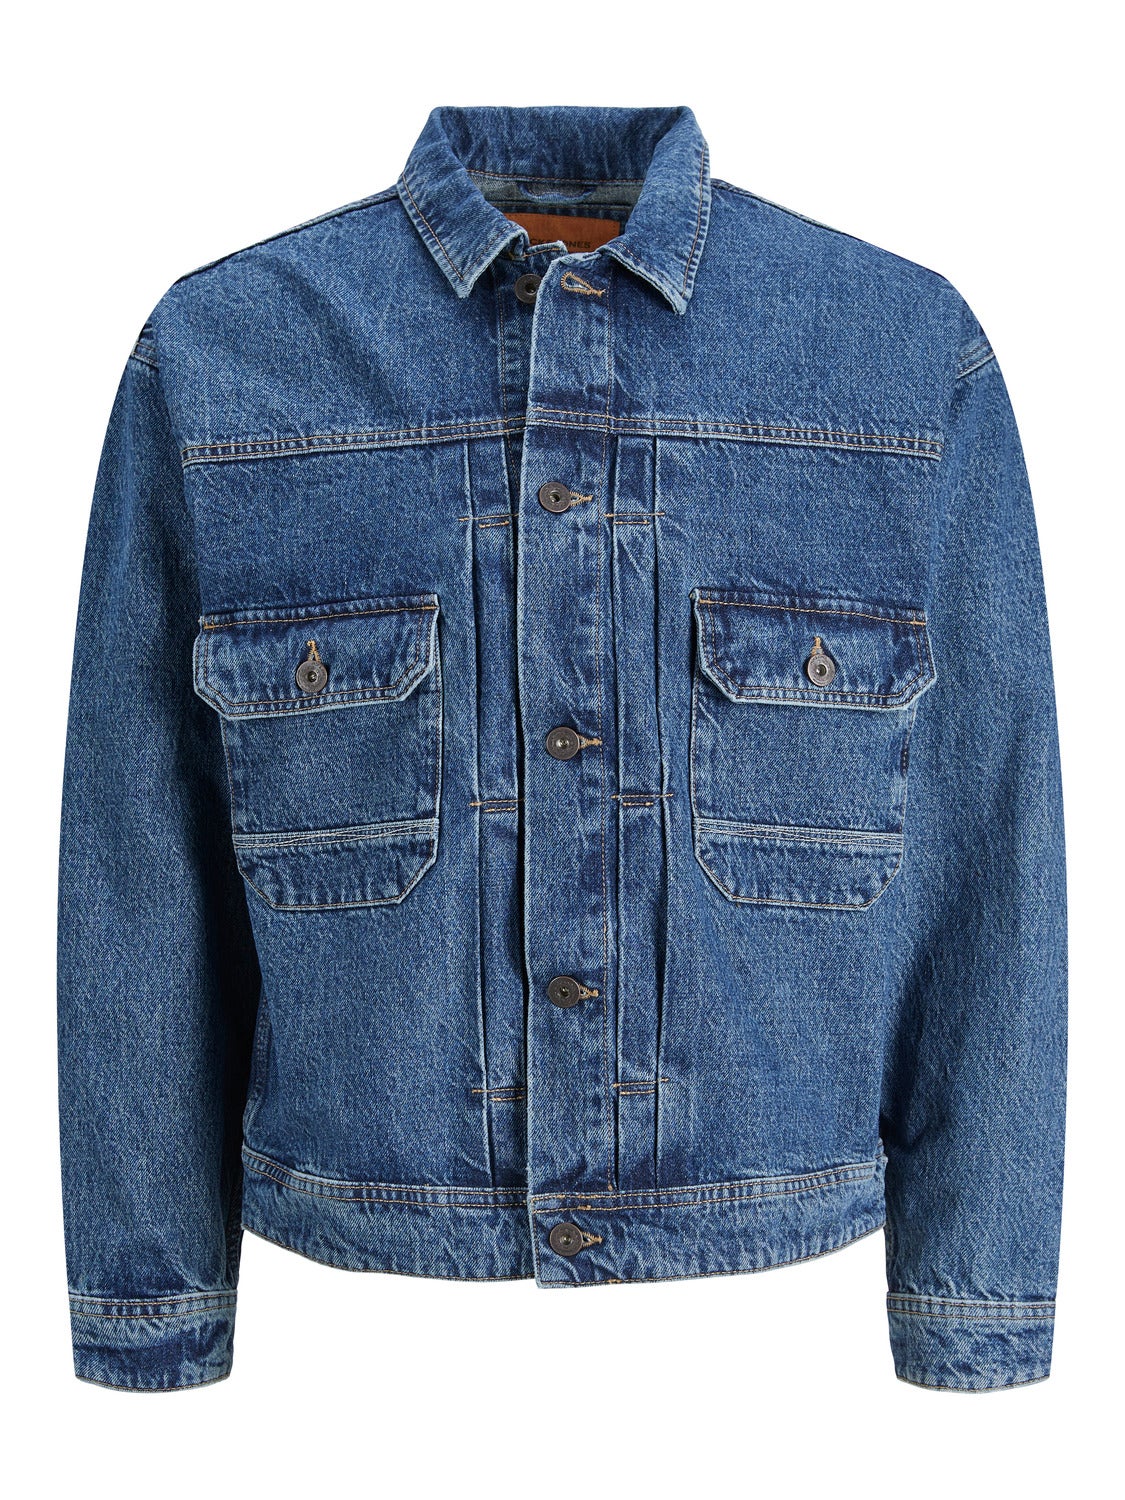 Jack & Jones Brown / Otter Washed Carpenter Denim Jacket | Shop the latest  fashion online @ DV8